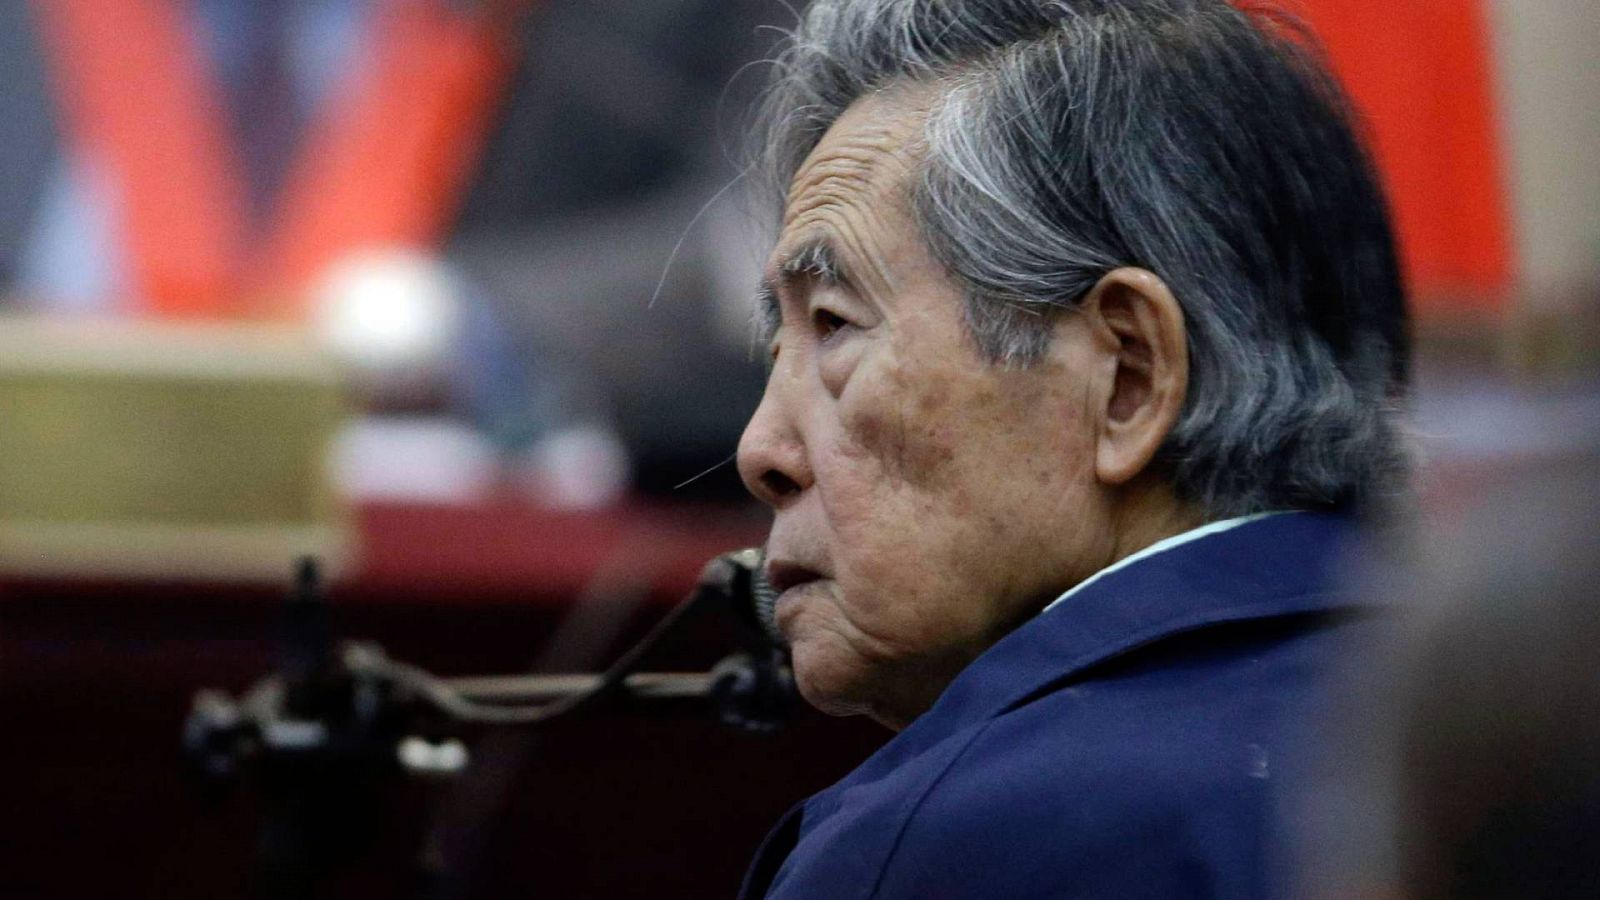 El expresidente peruano Alberto Fujimori en una imagen de archivo